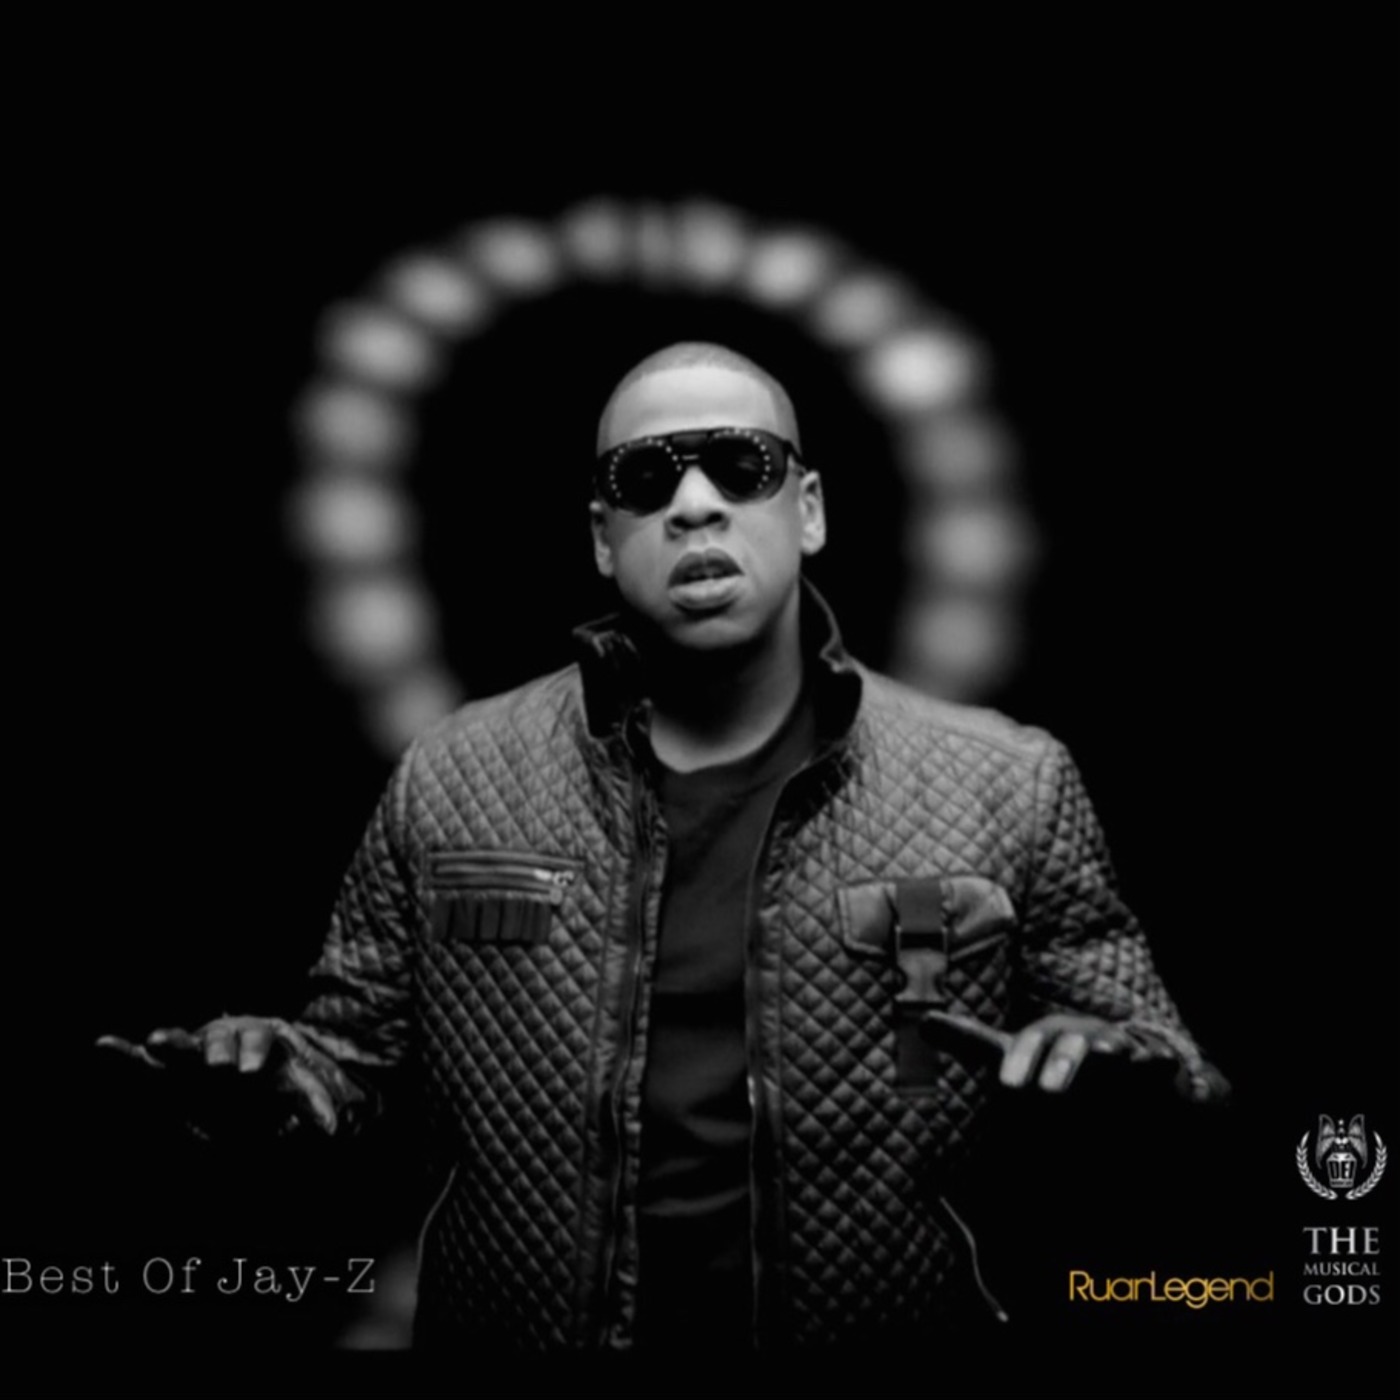 Crown : Best Of Jay-Z